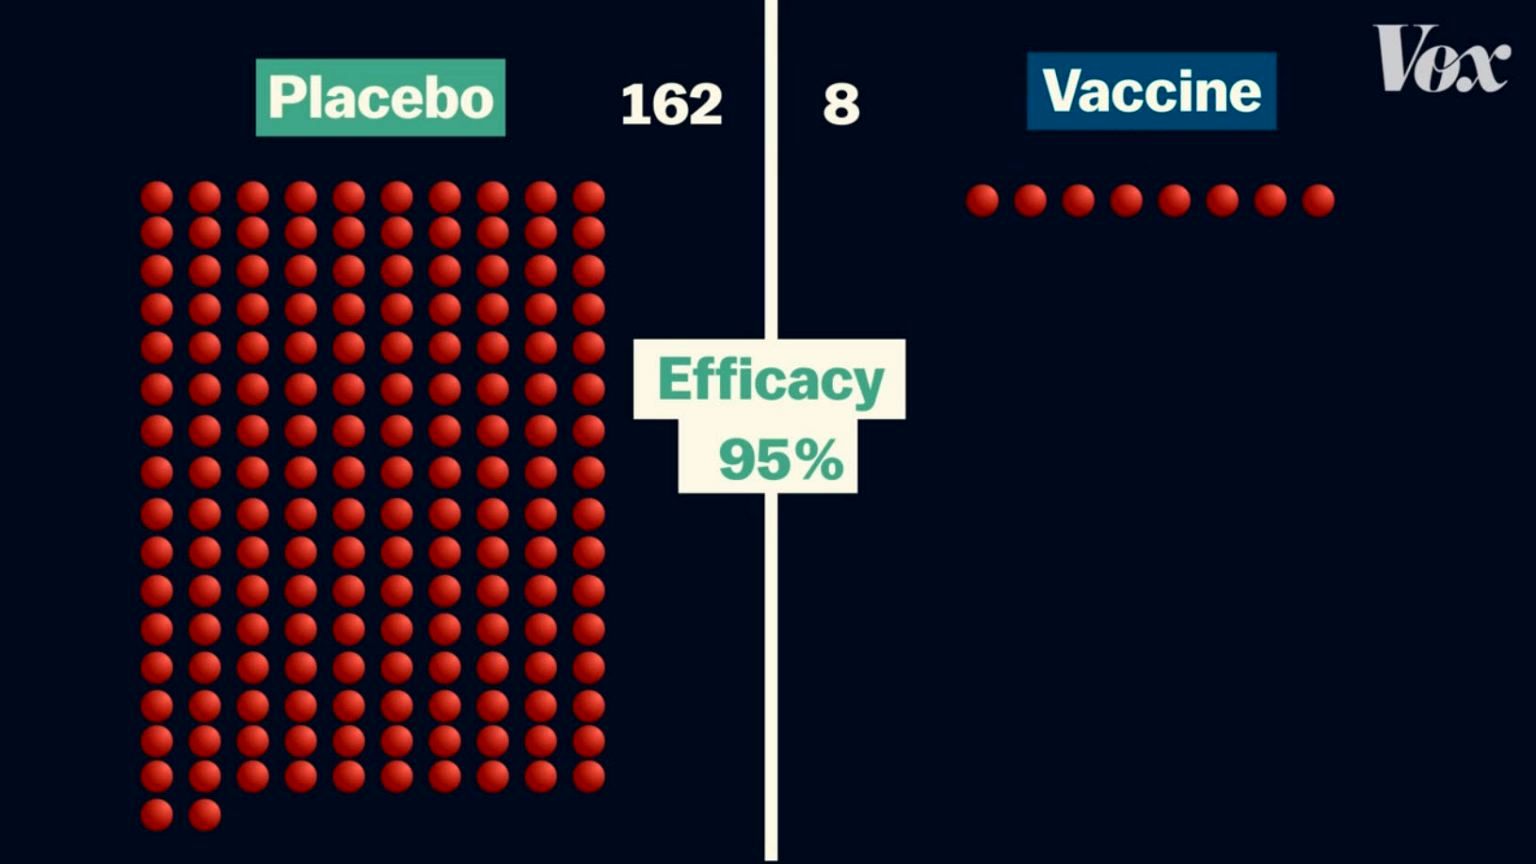 بهترین واکسن کرونا چیست؟ آیا واکسن فایزر با ۹۵ درصد کارایی بهتر از نواواکس یا جانسون و جانسون است؟